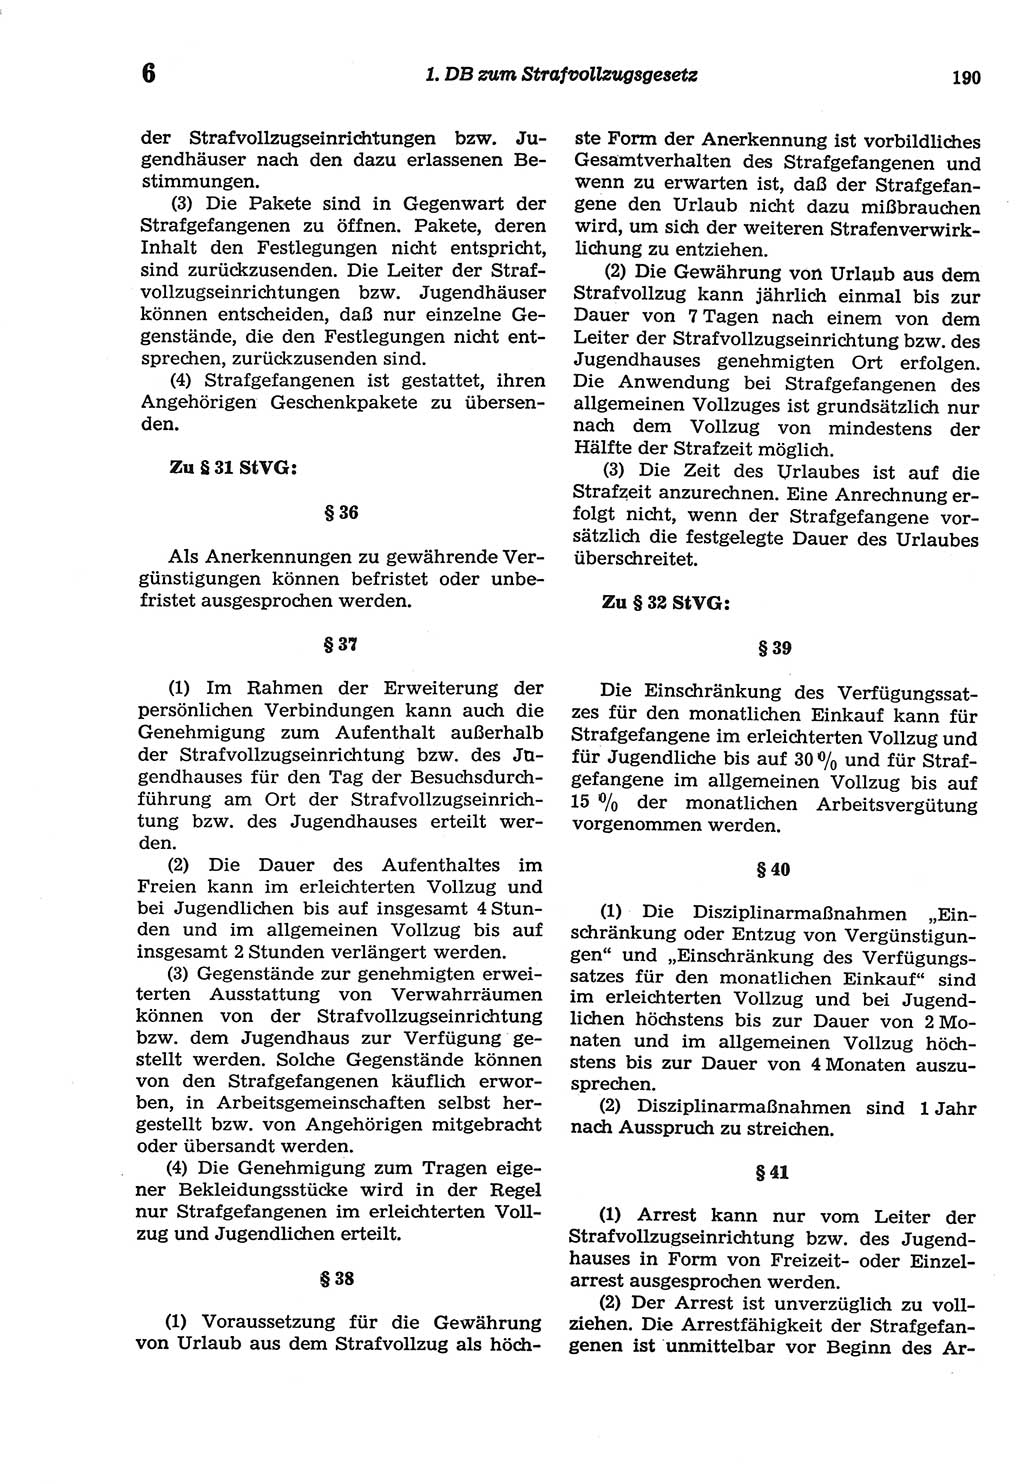 Strafprozeßordnung (StPO) der Deutschen Demokratischen Republik (DDR) sowie angrenzende Gesetze und Bestimmungen 1977, Seite 190 (StPO DDR Ges. Best. 1977, S. 190)